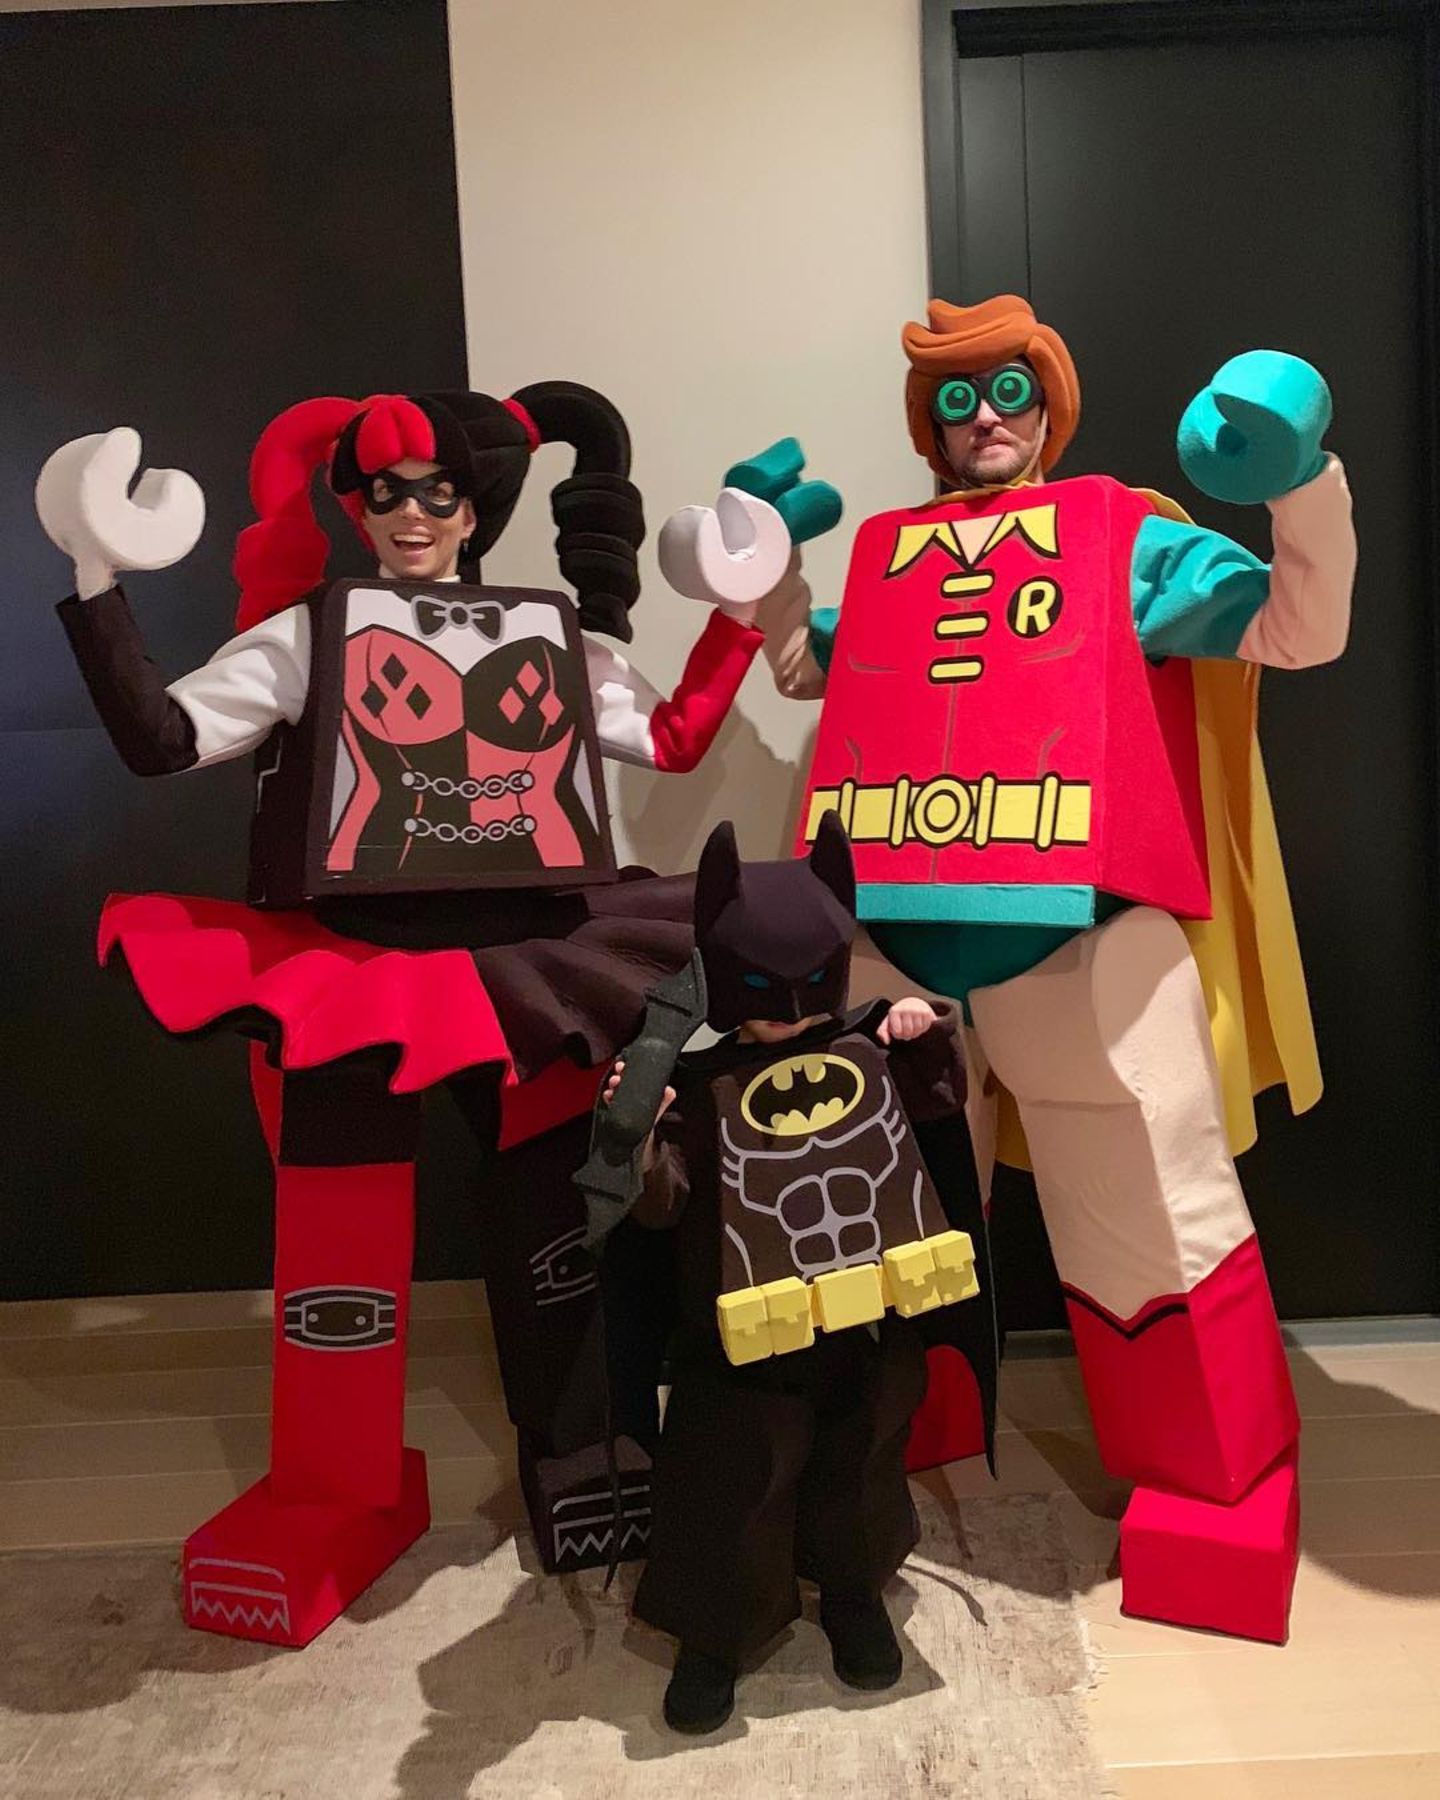 Erkennen Sie diese lustige Familie in den Lego-Kostümen? Justin Timberlake, Jessica Biel und Söhnchen Silas als lustige Legofiguren. 